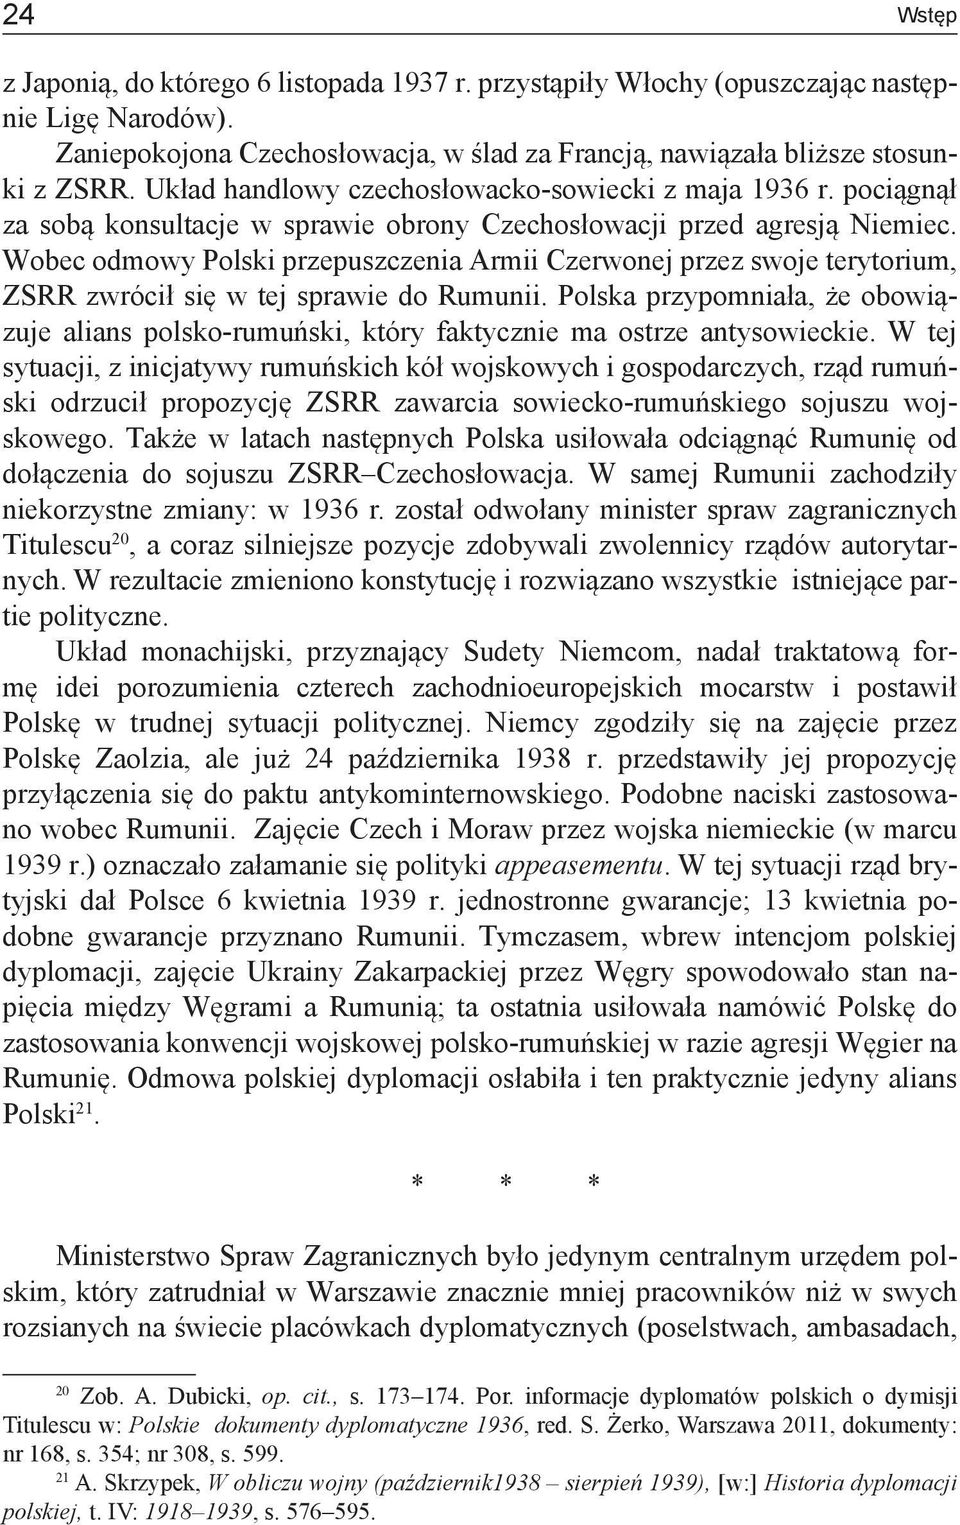 Wobec odmowy Polski przepuszczenia Armii Czerwonej przez swoje terytorium, ZSRR zwrócił się w tej sprawie do Rumunii.